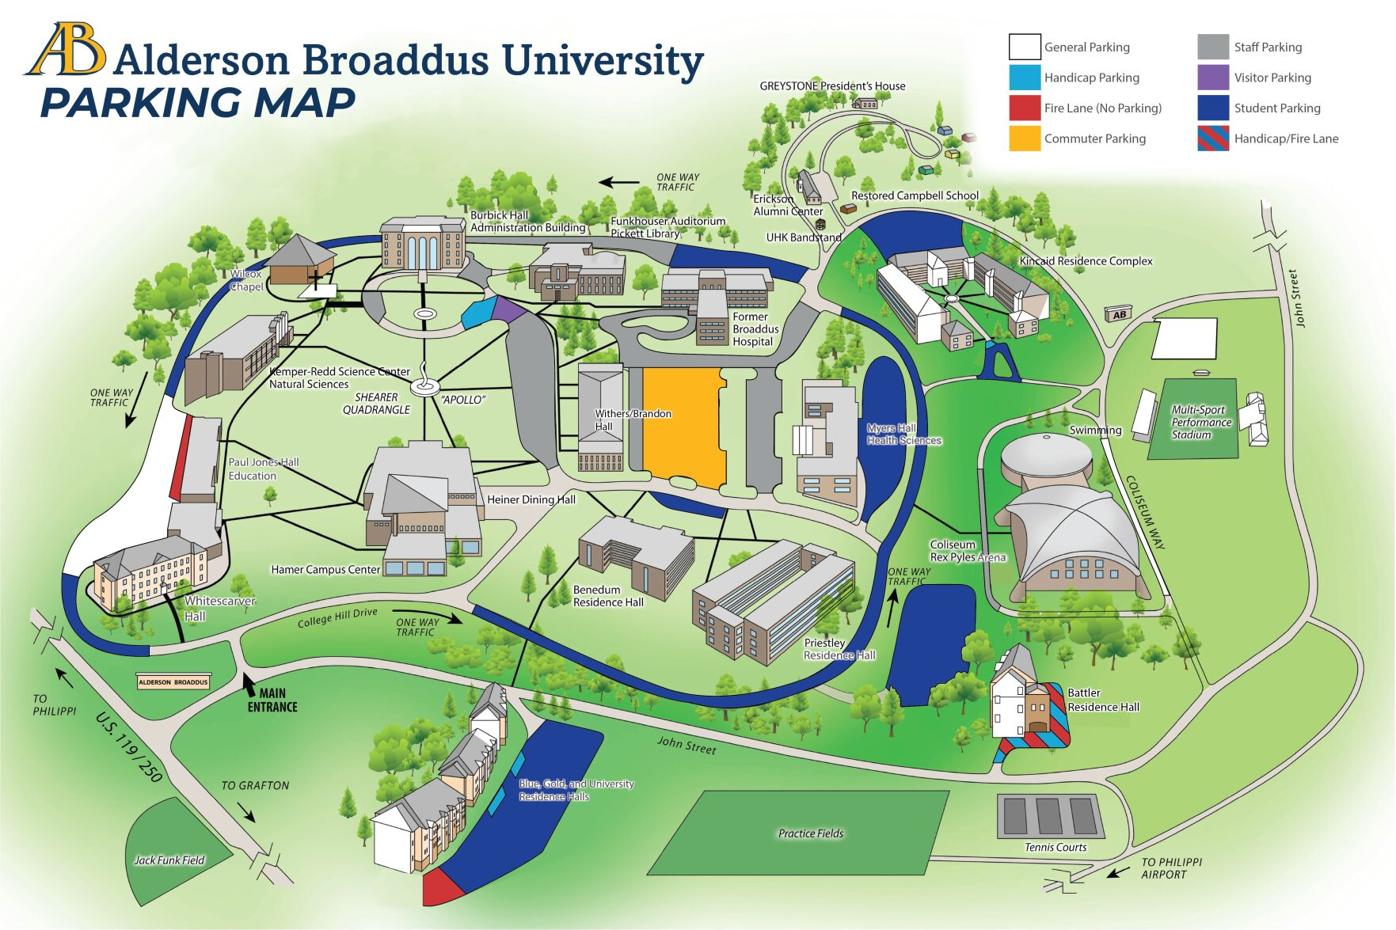 Alderson-Broaddus campus parking map